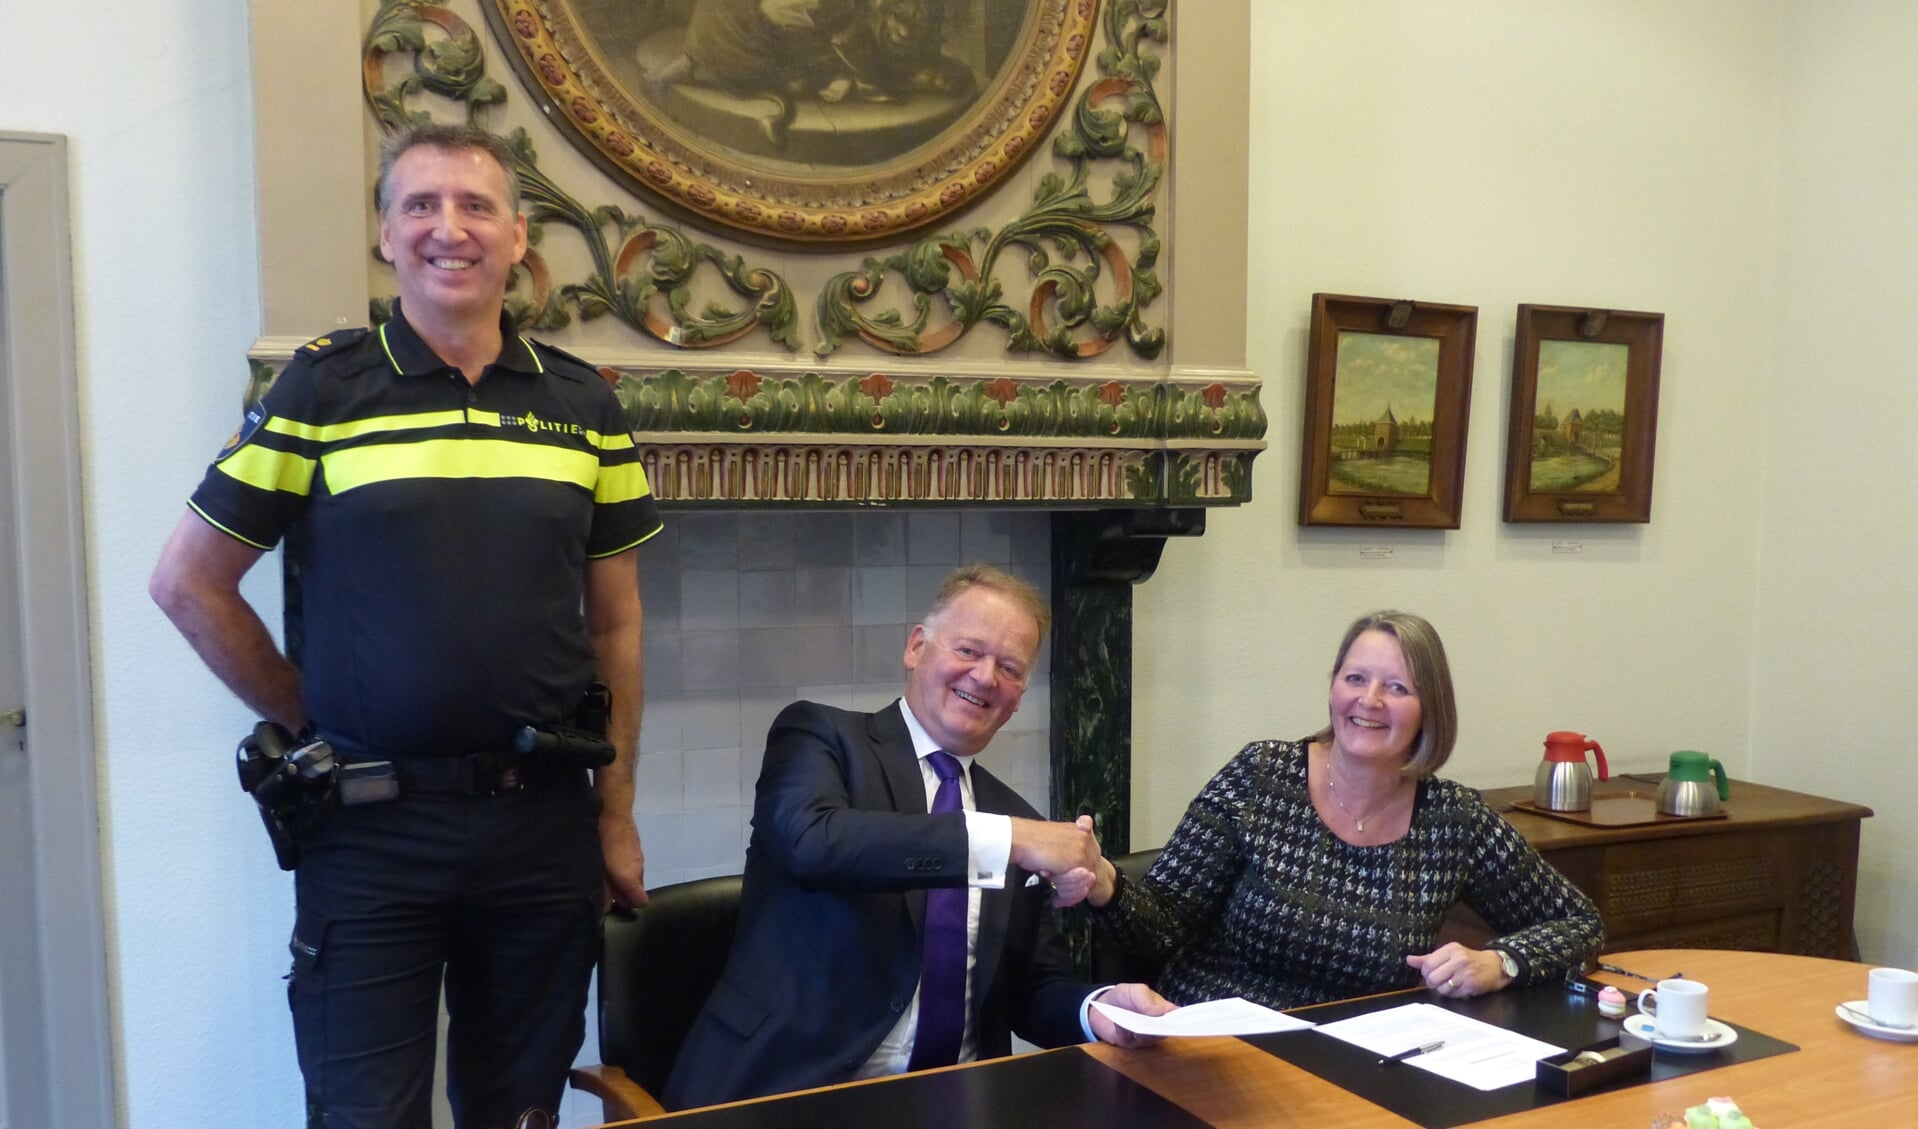 • Ondertekening van de intentieovereenkomst door burgemeester Roel Cazemier en Rafaëlle Quax, coördinator cluster Vastgoedtransacties van het Politiedienstencentrum en Robert-Jan van den Burg, teamchef van politie Krimpenerwaard.